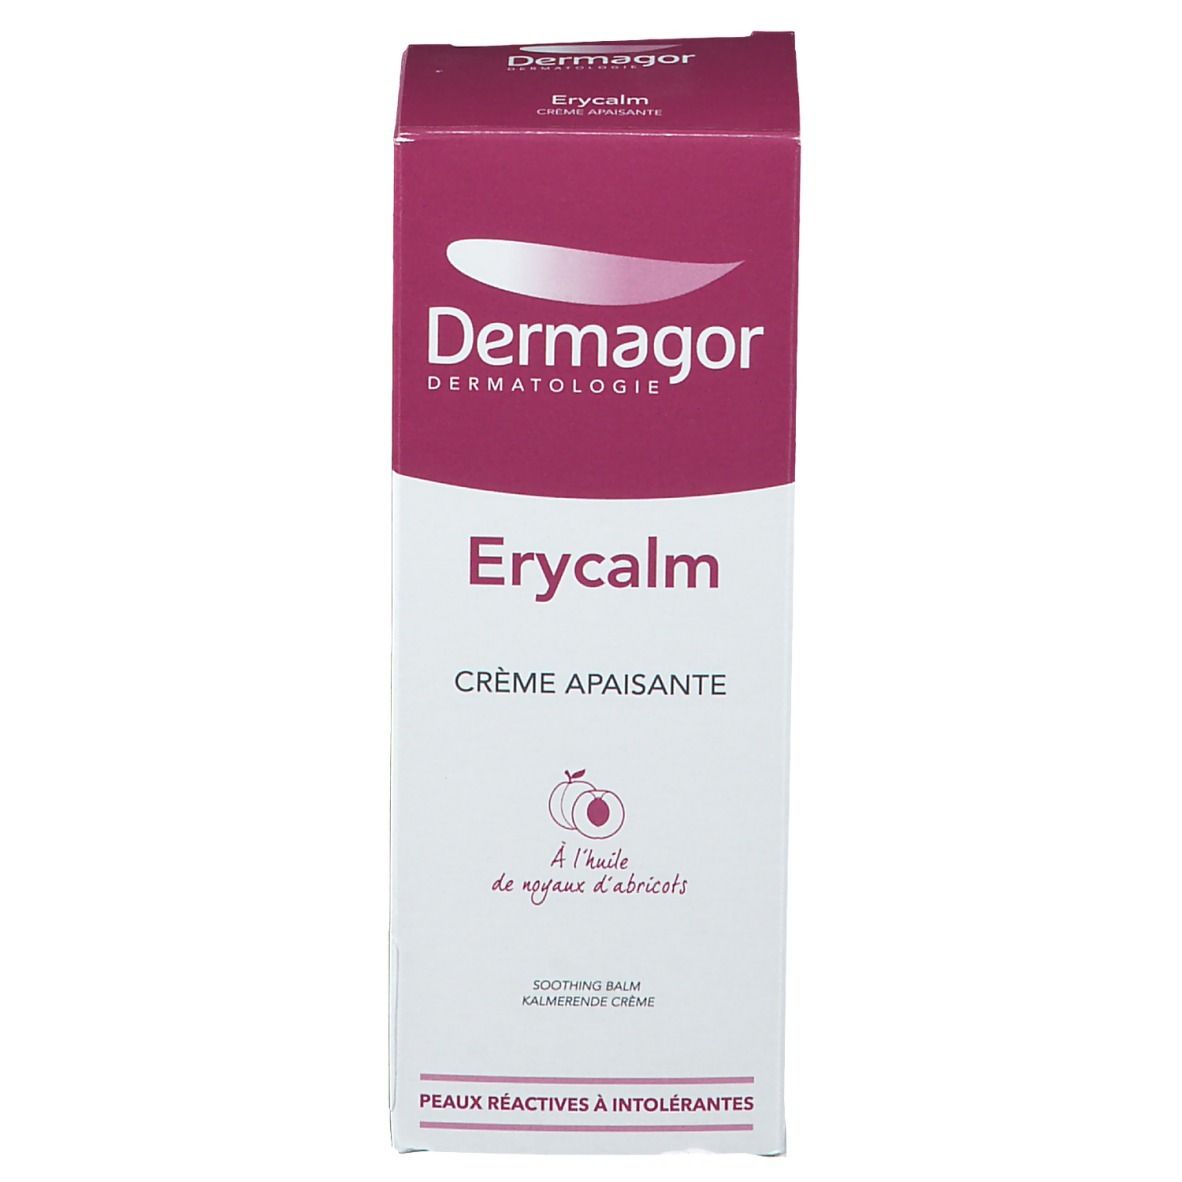 Dermagor Erycalm crème apaisante